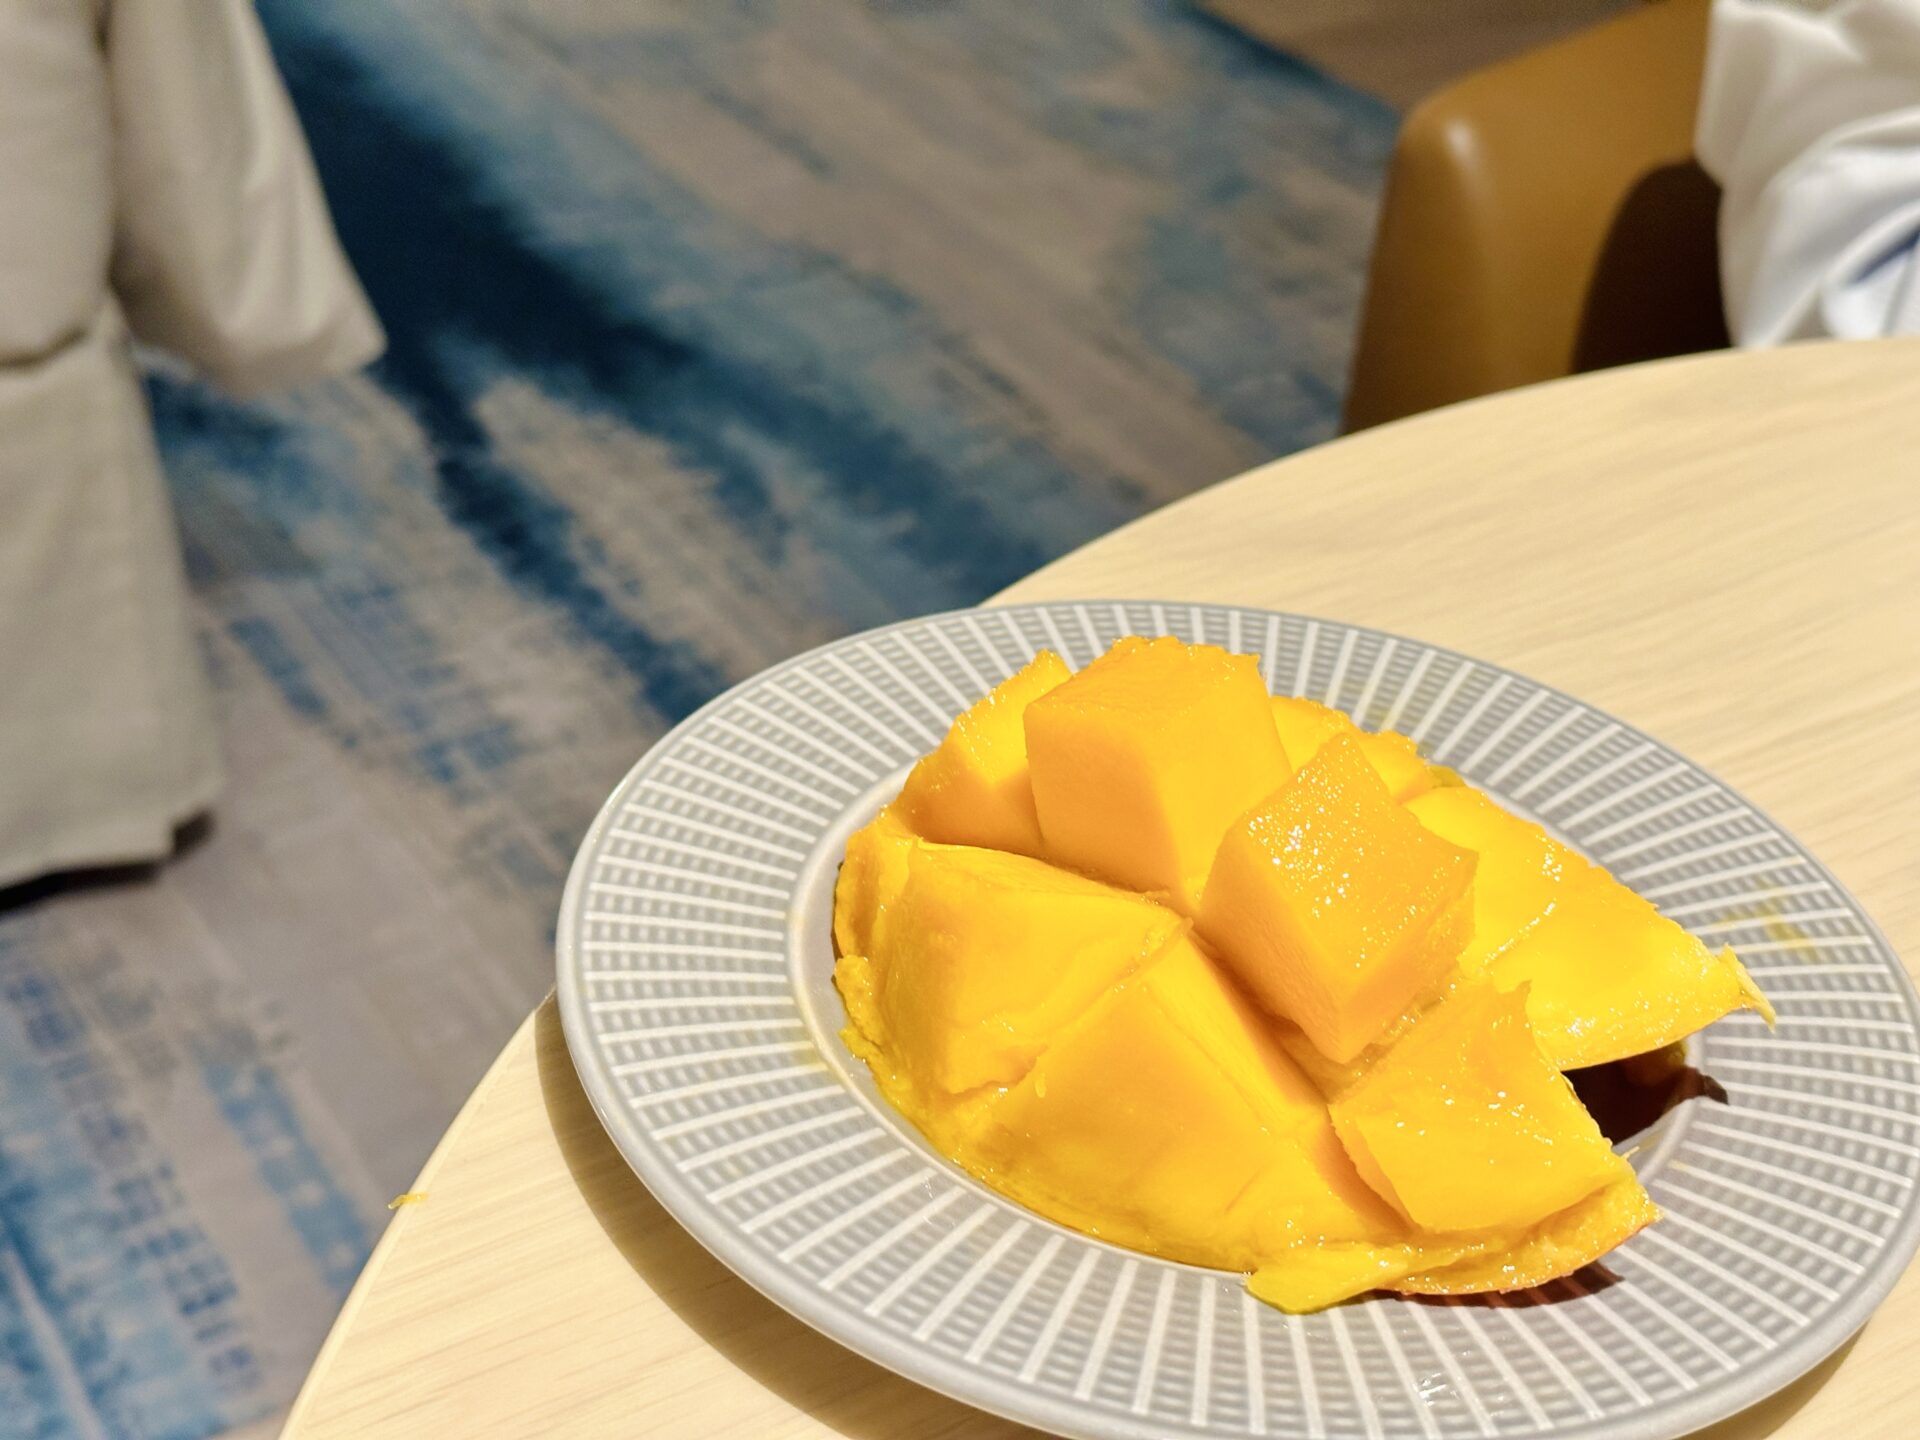 【ブログ旅行記】はじめての宮古島旅行 3泊4日ゆったりモデルコース 客室で完熟マンゴーを味わう